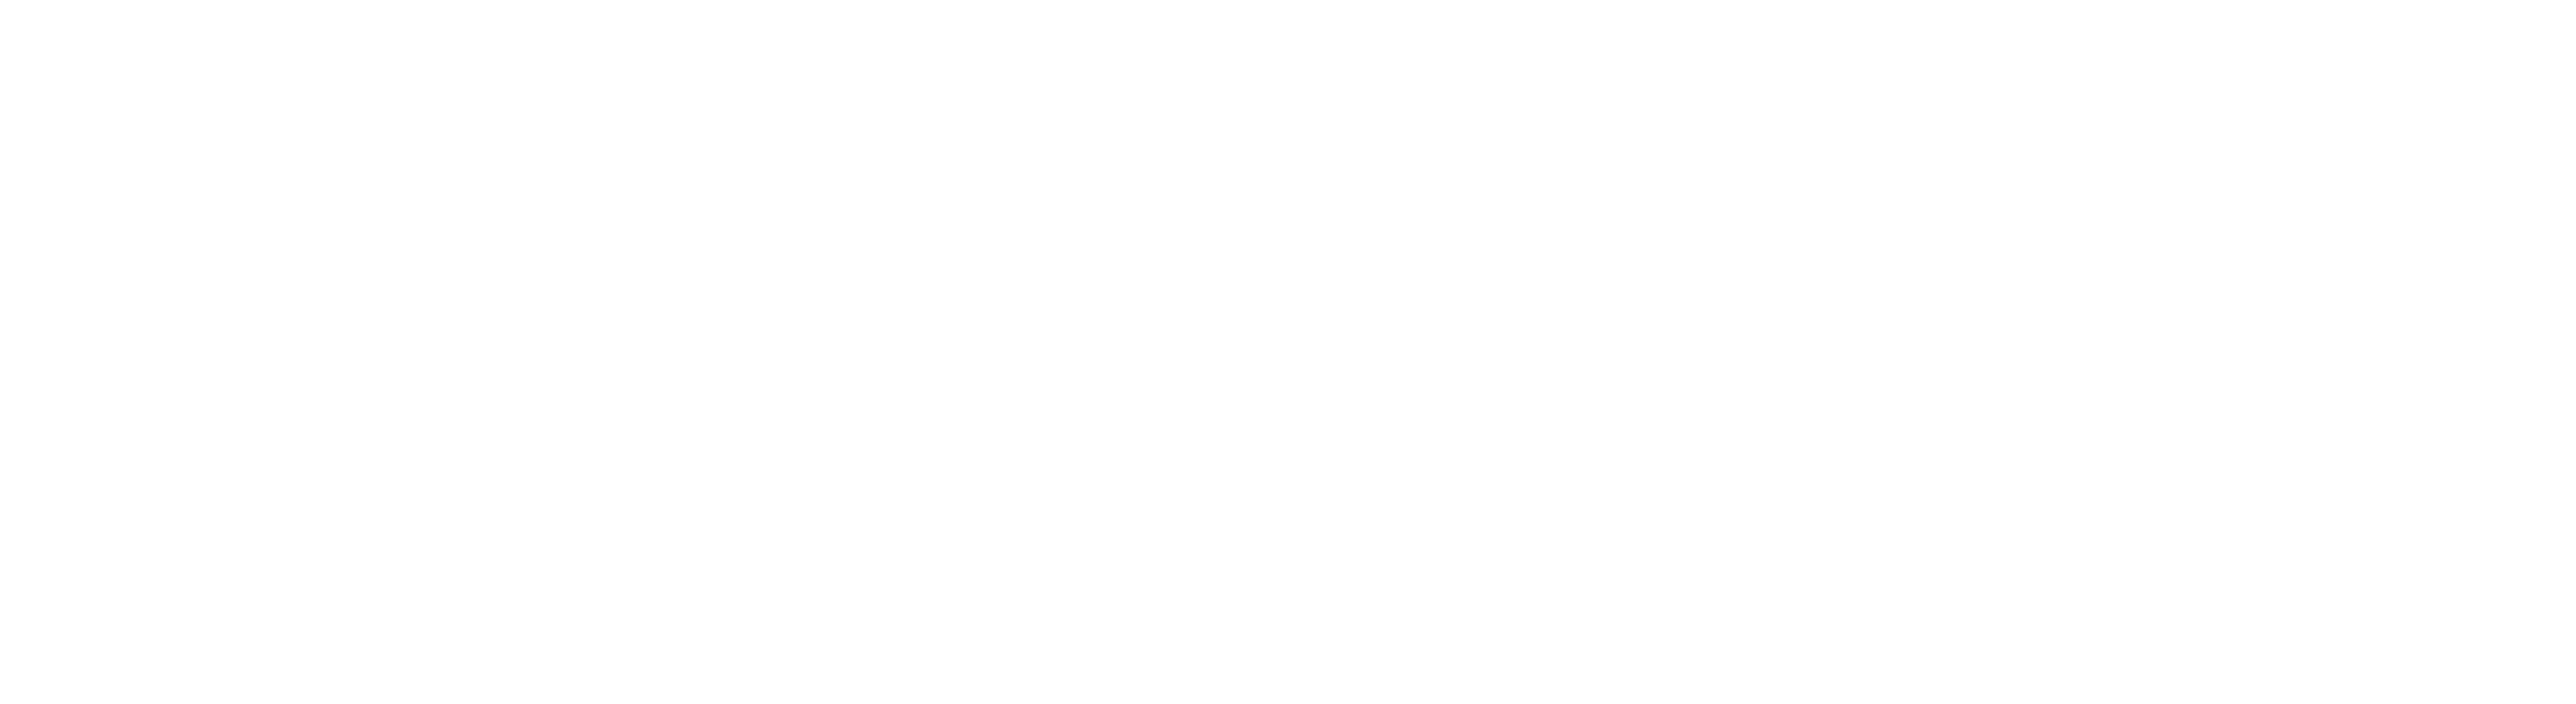 Vallekilde-Hørve Friskole